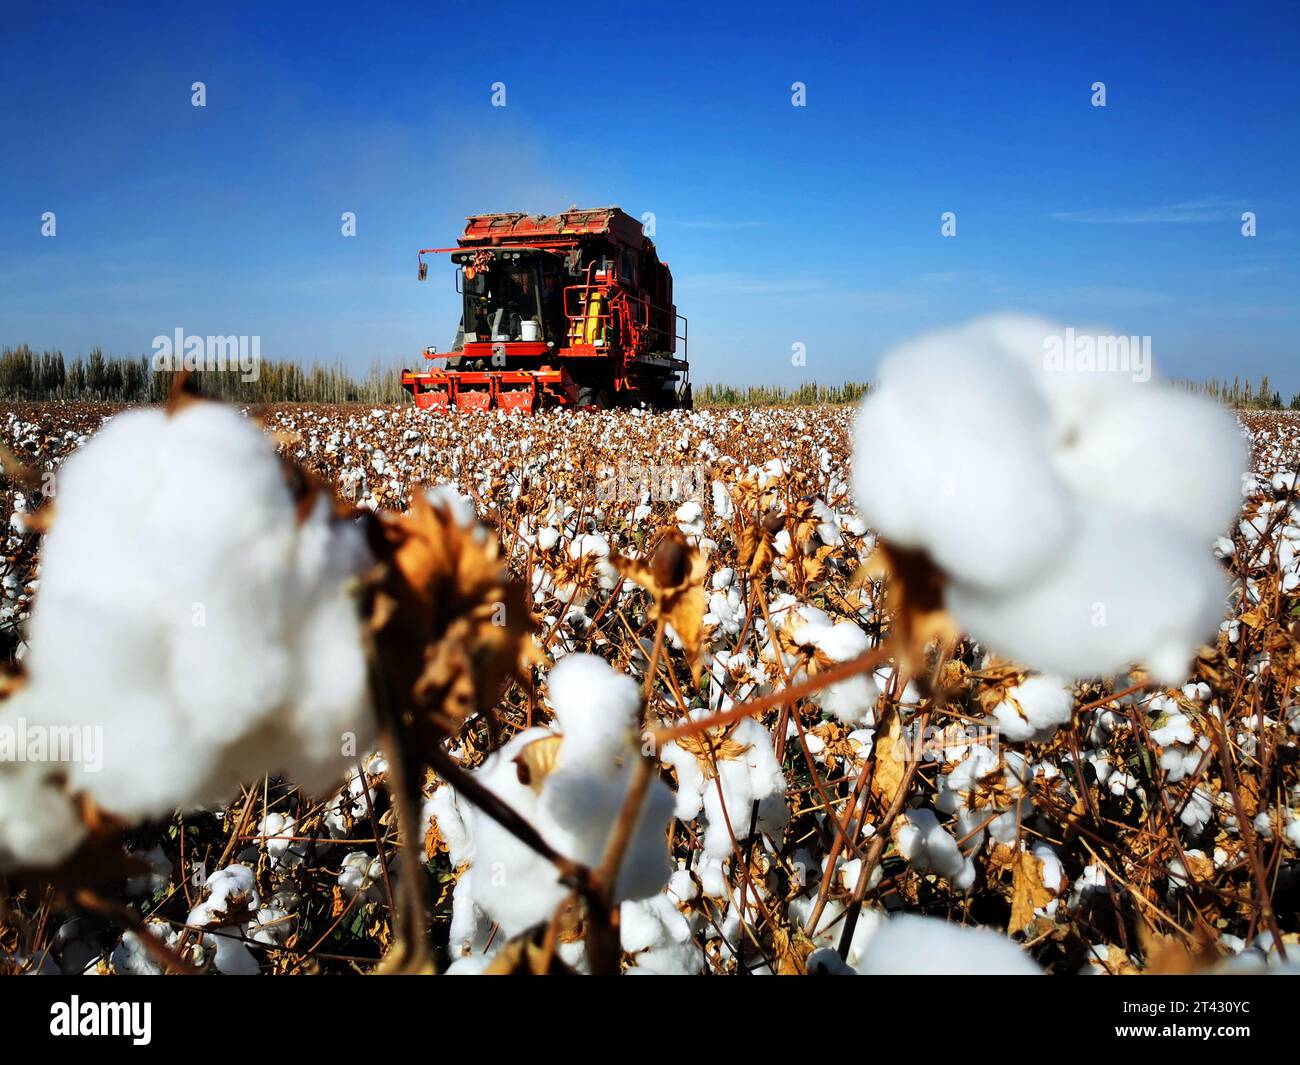 AKESU, CINA - 28 OTTOBRE 2023 - i contadini guidano raccoglitori di cotone che preleva cotone nel villaggio di Qiongkul Aiken, città di Akesu, Xinjiang Uygur au della Cina nord-occidentale Foto Stock